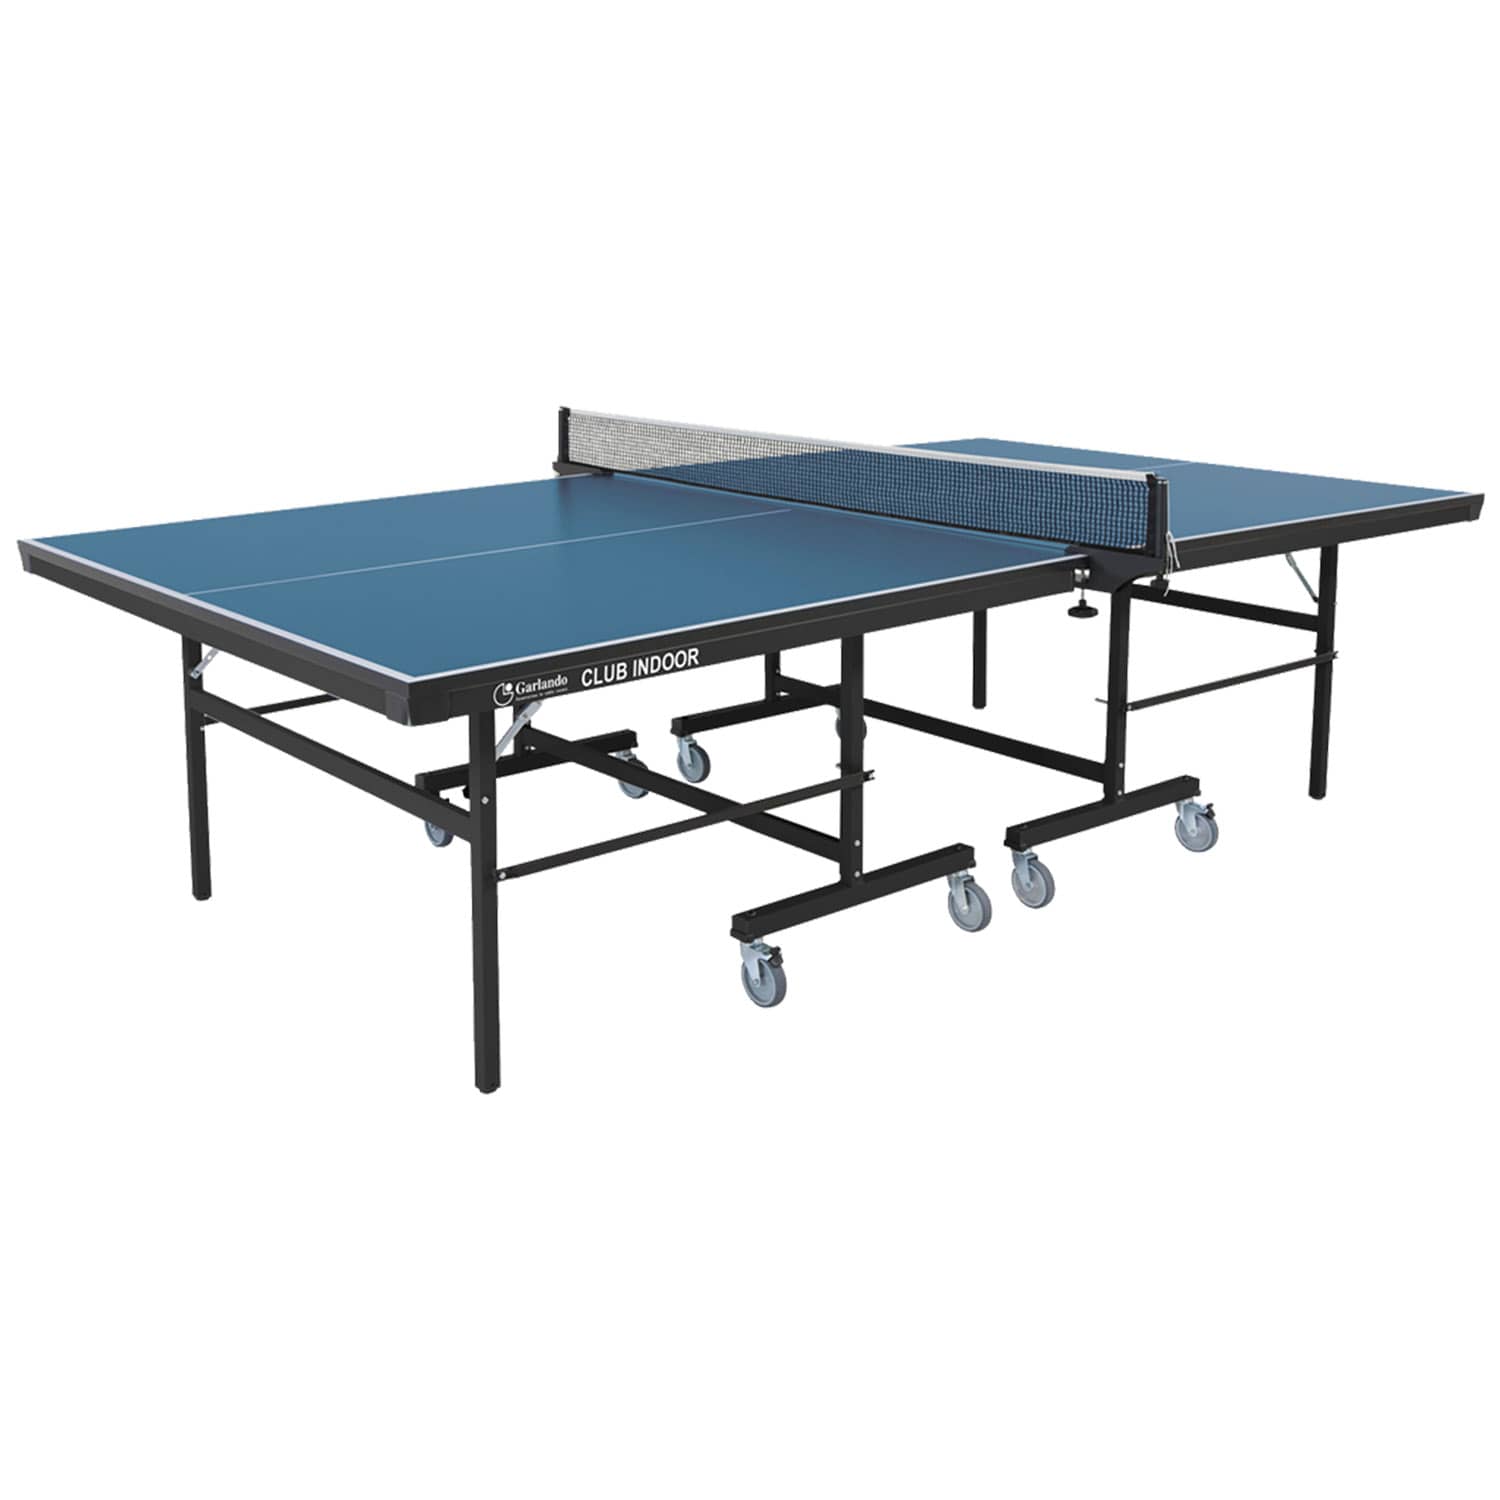 Table de ping pong Progress outdoor Garlando